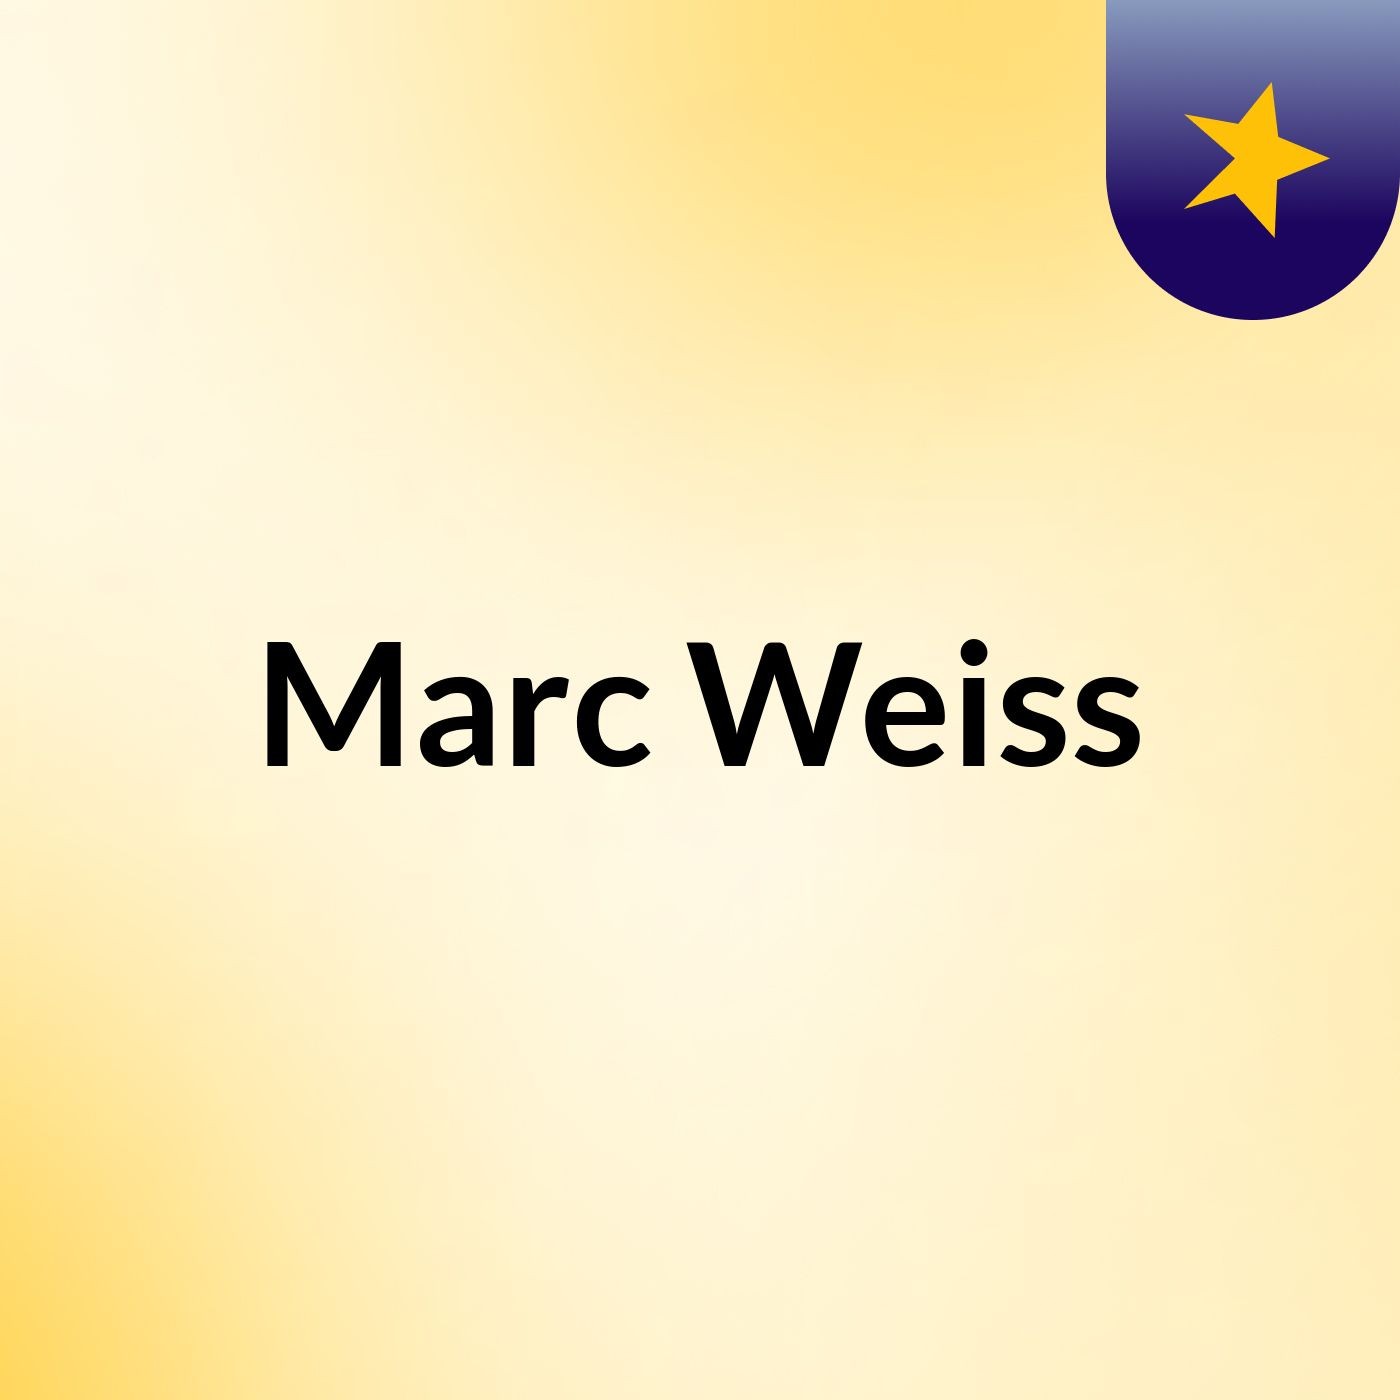 Marc Weiss